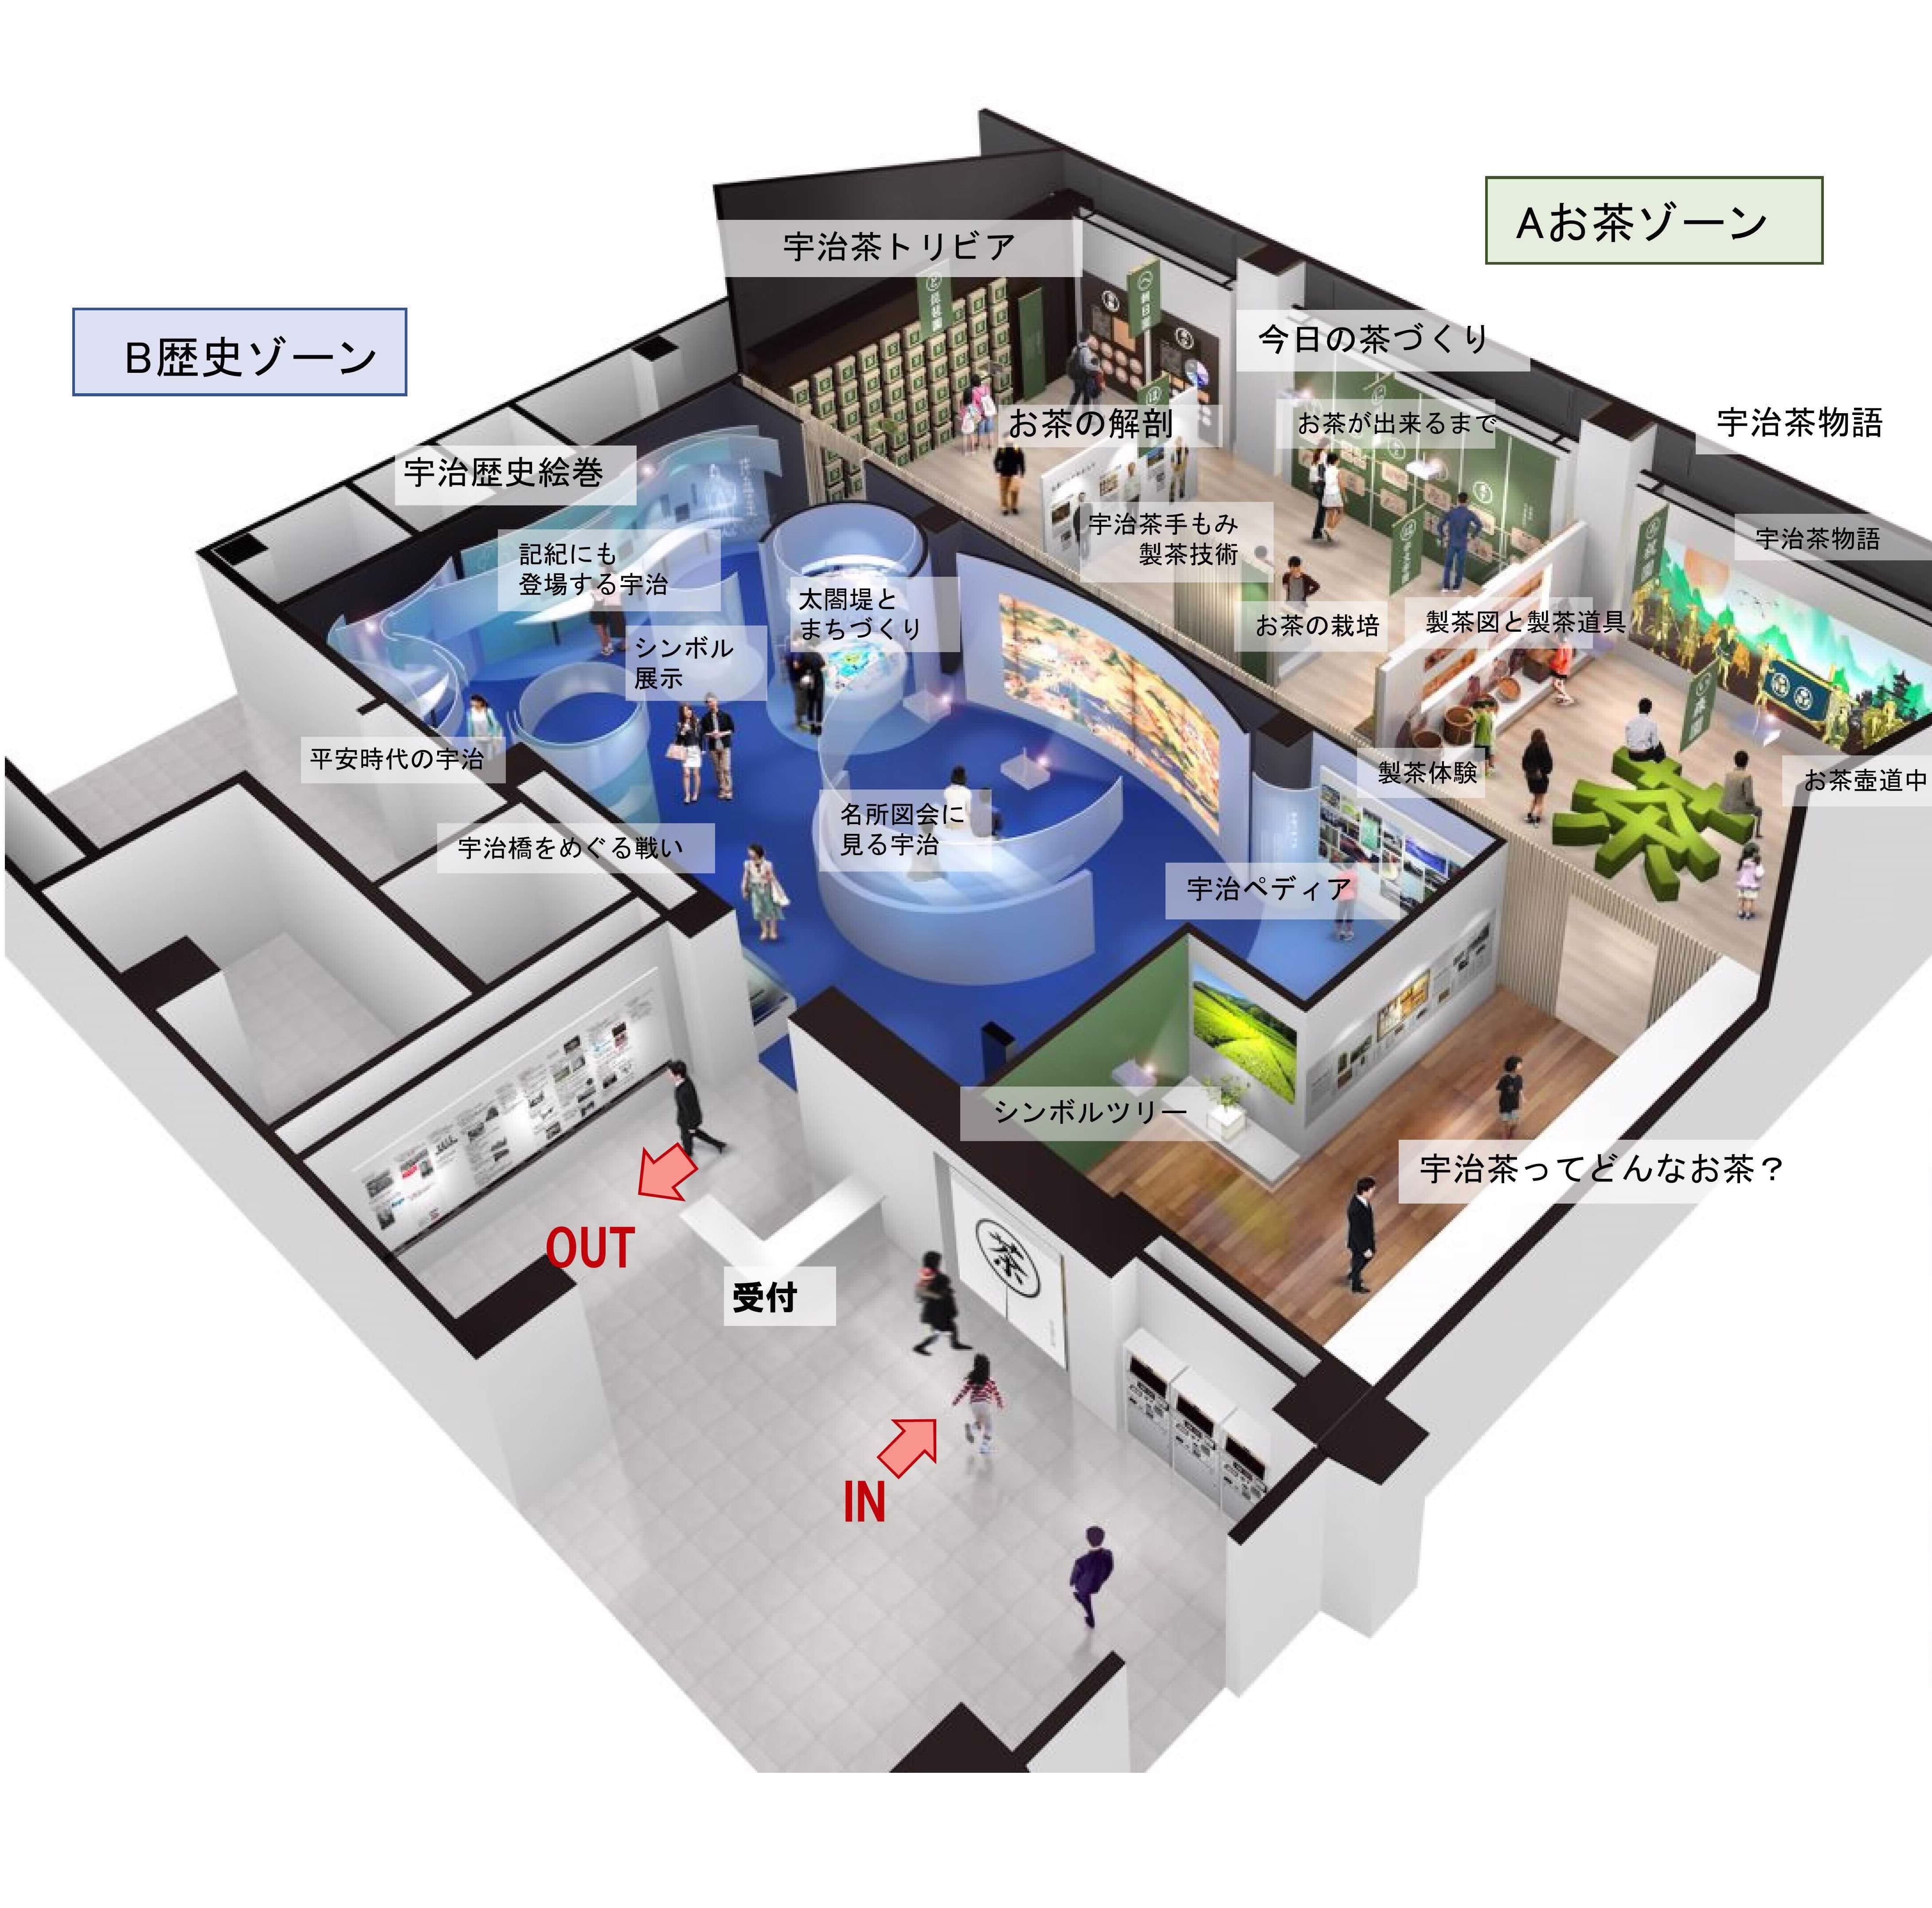 お茶のミュージアム来年6月開館　茶葉に触れ香り楽しむ体験も　京都・宇治市が概要公表